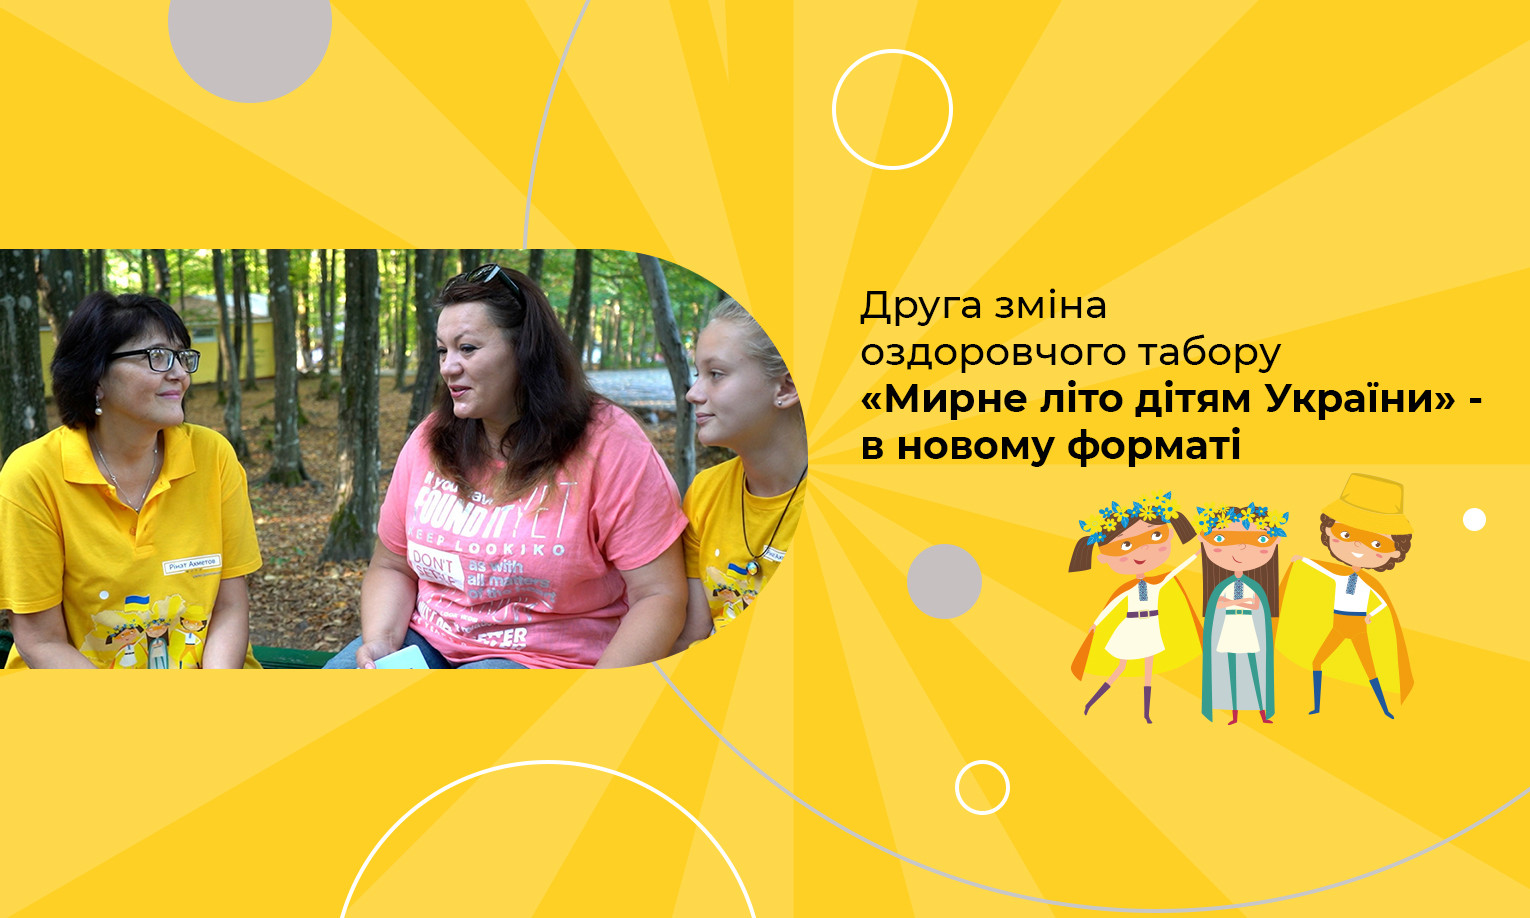 Друга зміна оздоровчого табору «Мирне літо дітям України» - в новому форматі